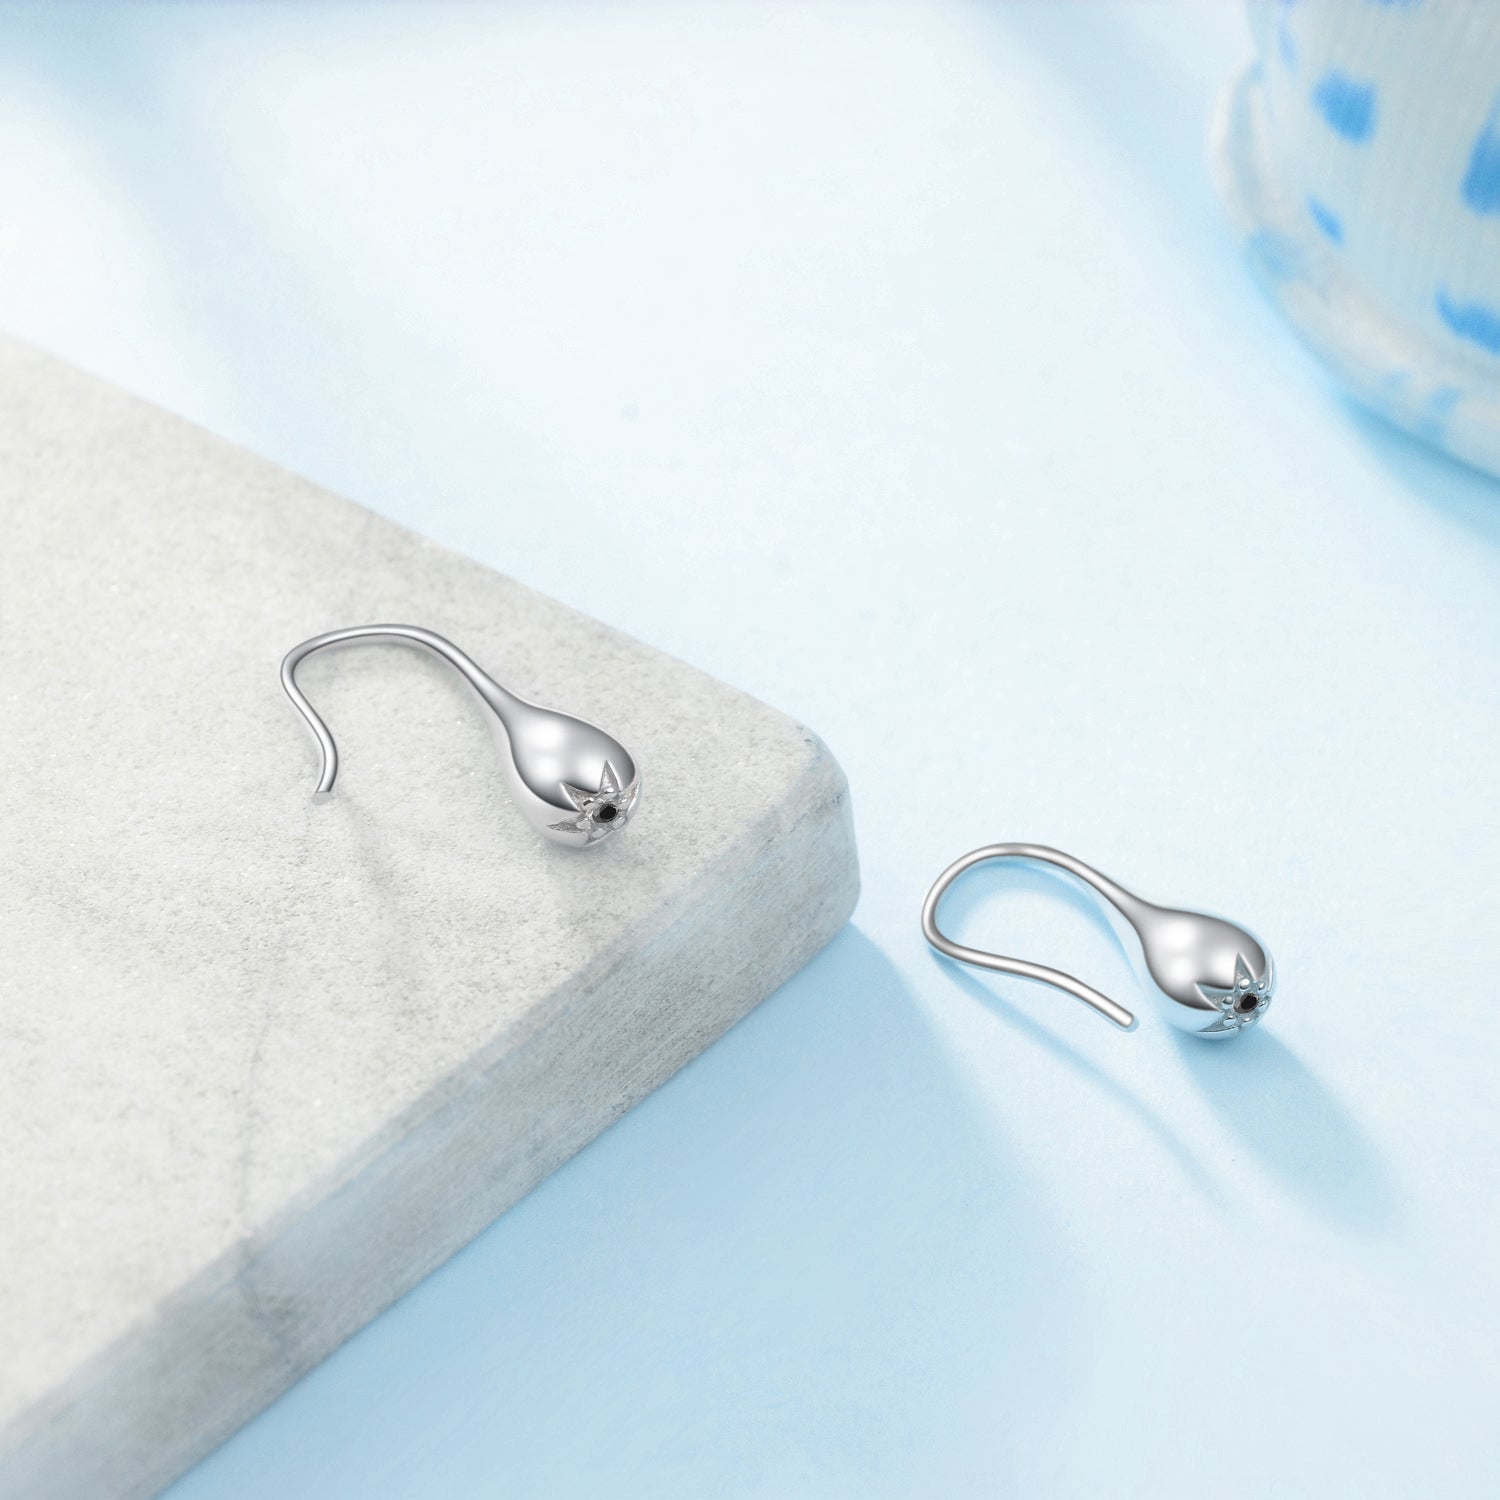 Water Drop Shape Earrings Sleek Silver Ball Design Earrings Girl Gift